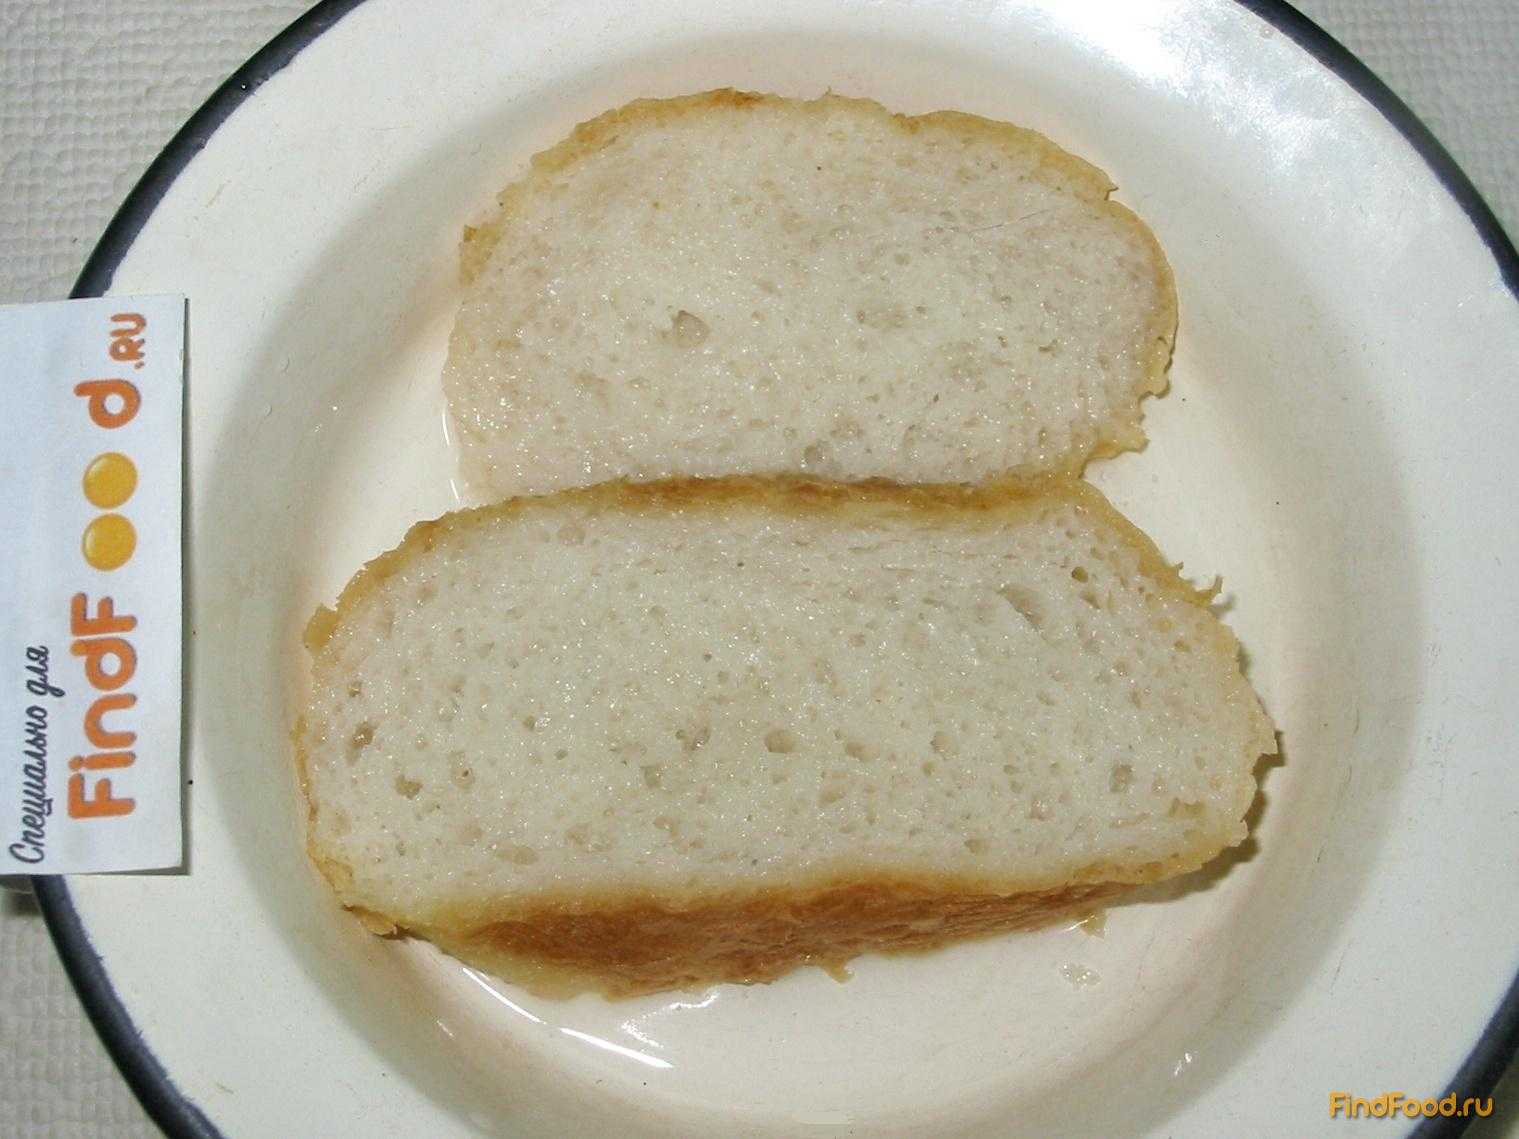 Хлеб с майонезом рецепт. Размоченный хлеб. Оладьи на молоке без яиц рецепт. Хлеб печеночный без манки как колбаса. При геморрое можно есть оладьи, ведь они как белый хлеб.